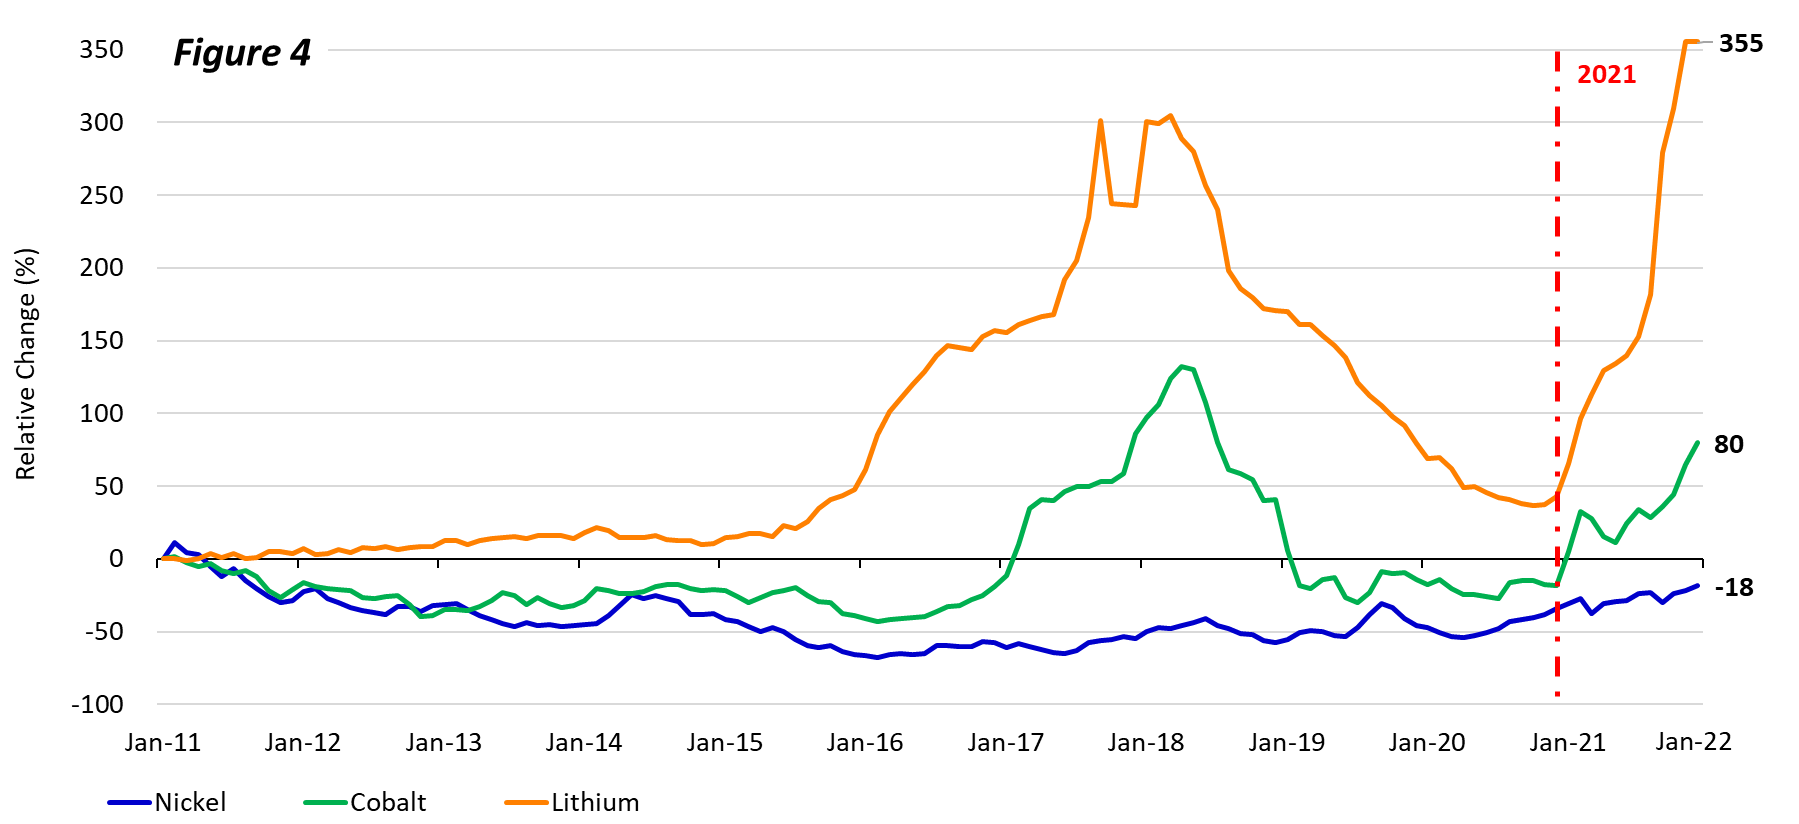 Figure 4_Battery Metals Price Change